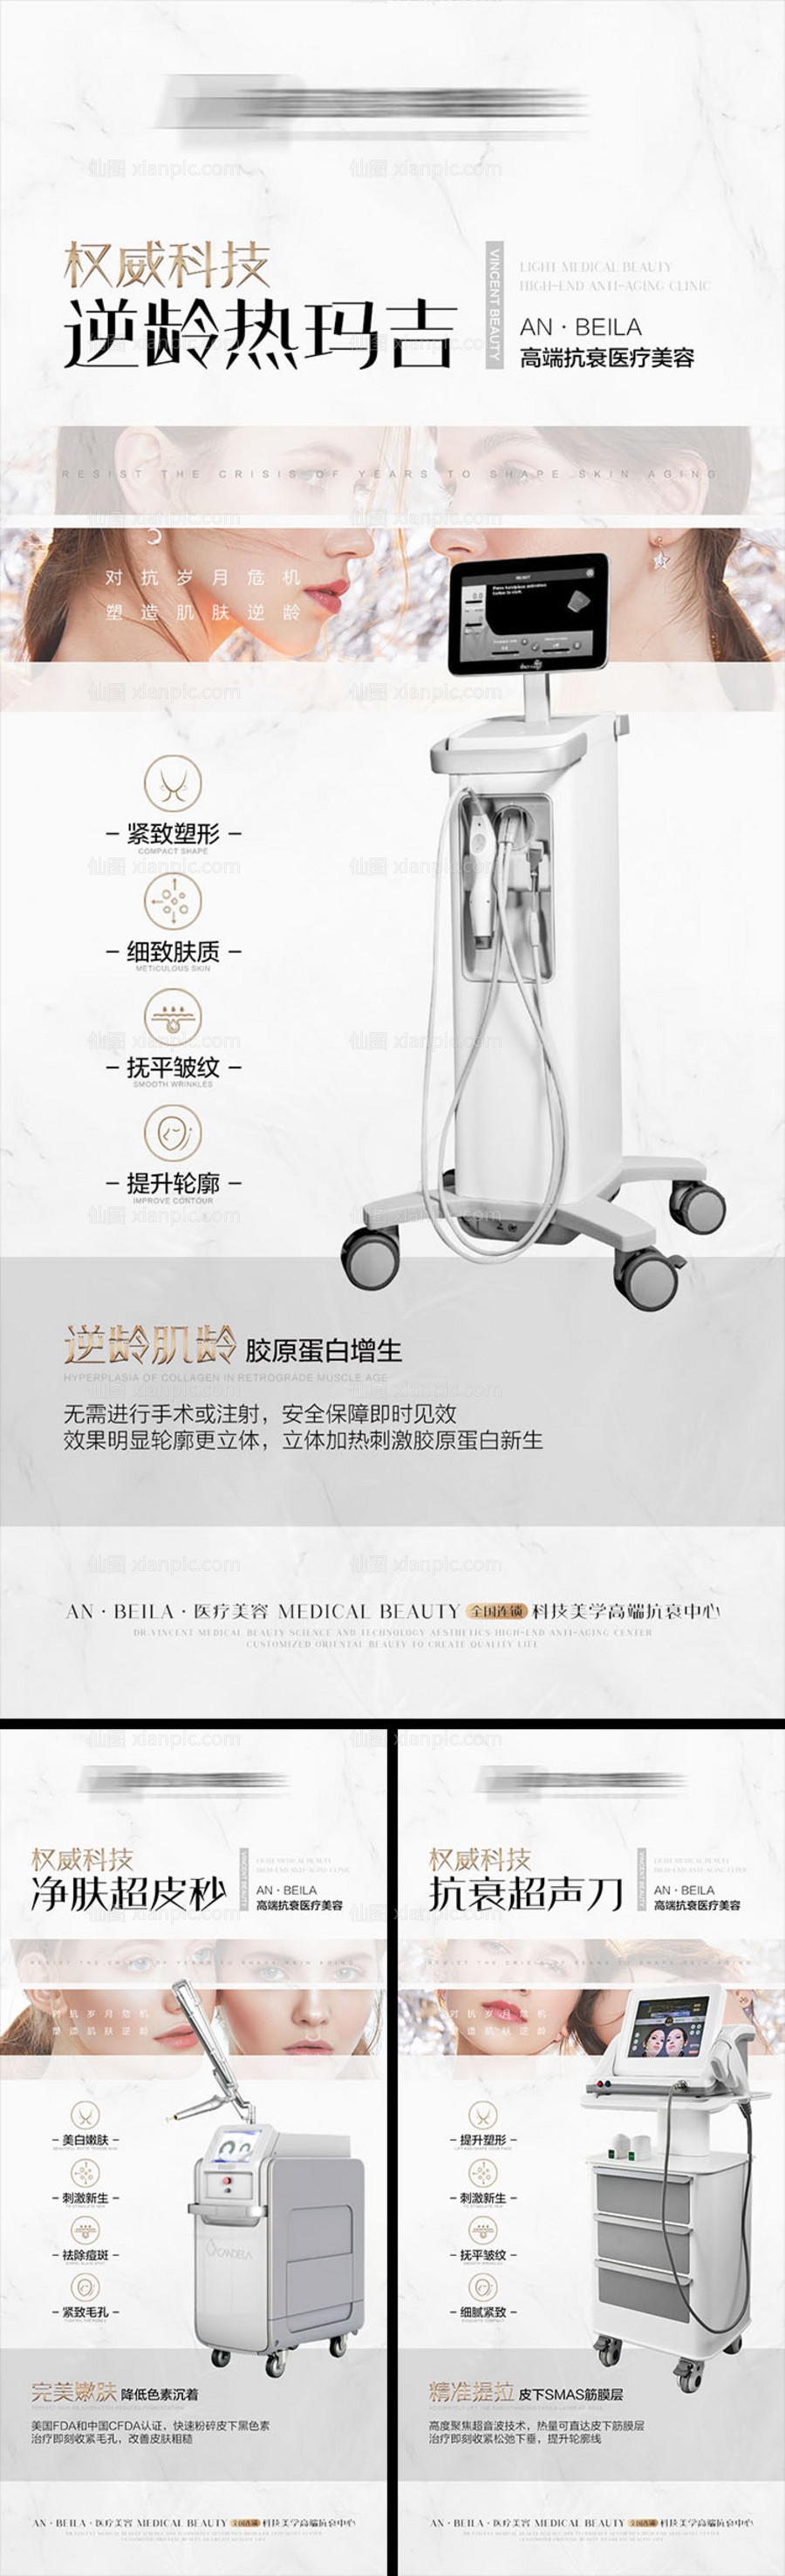 素材乐-医美仪器抗衰系列宣传海报